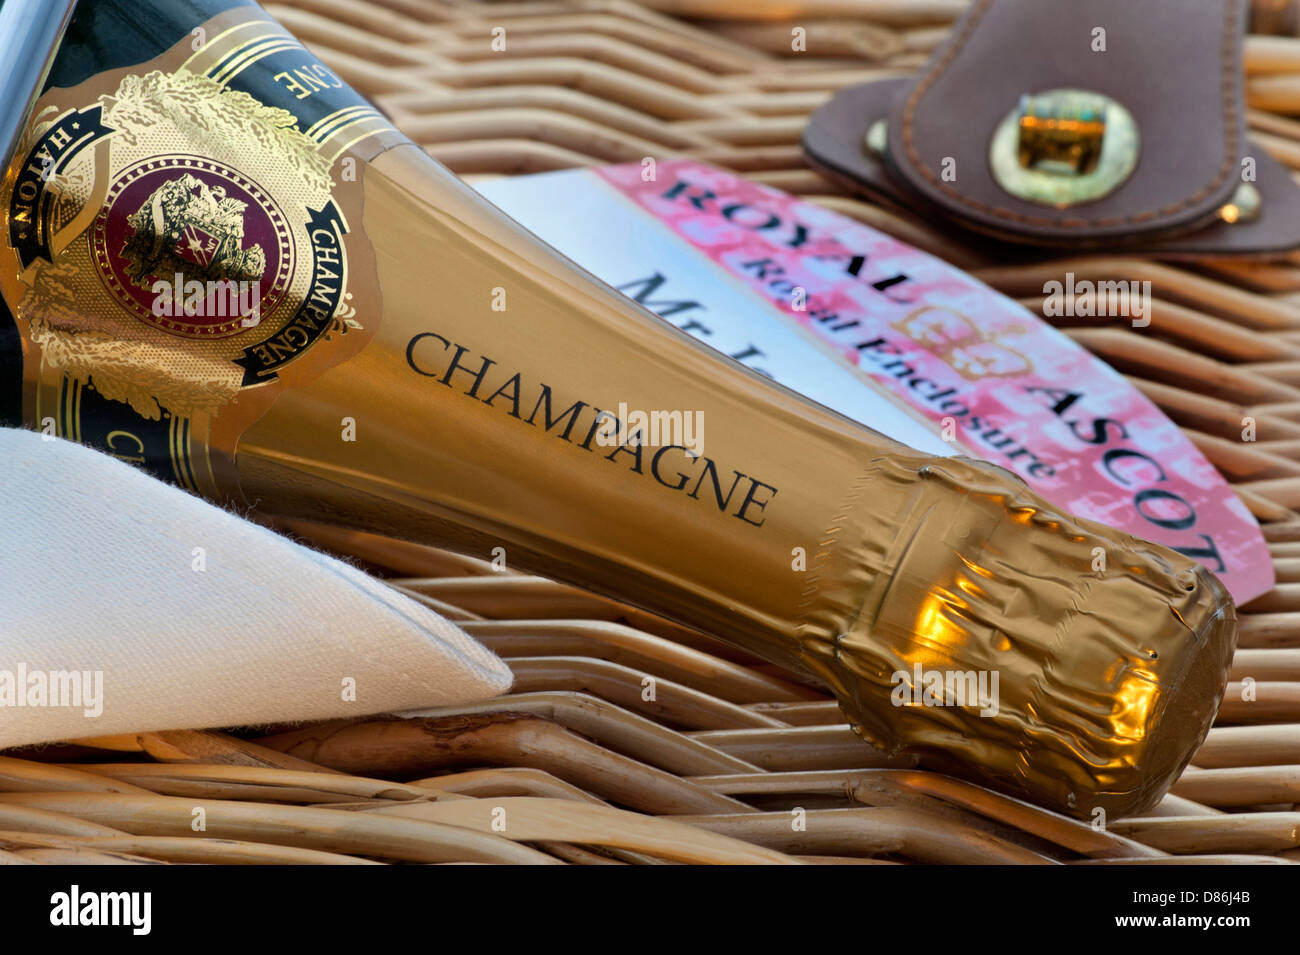 Bouteille de champagne ASCOT sur panier pique-nique en osier avec billet pour l'Ascot Royal Racing Enclosure Banque D'Images